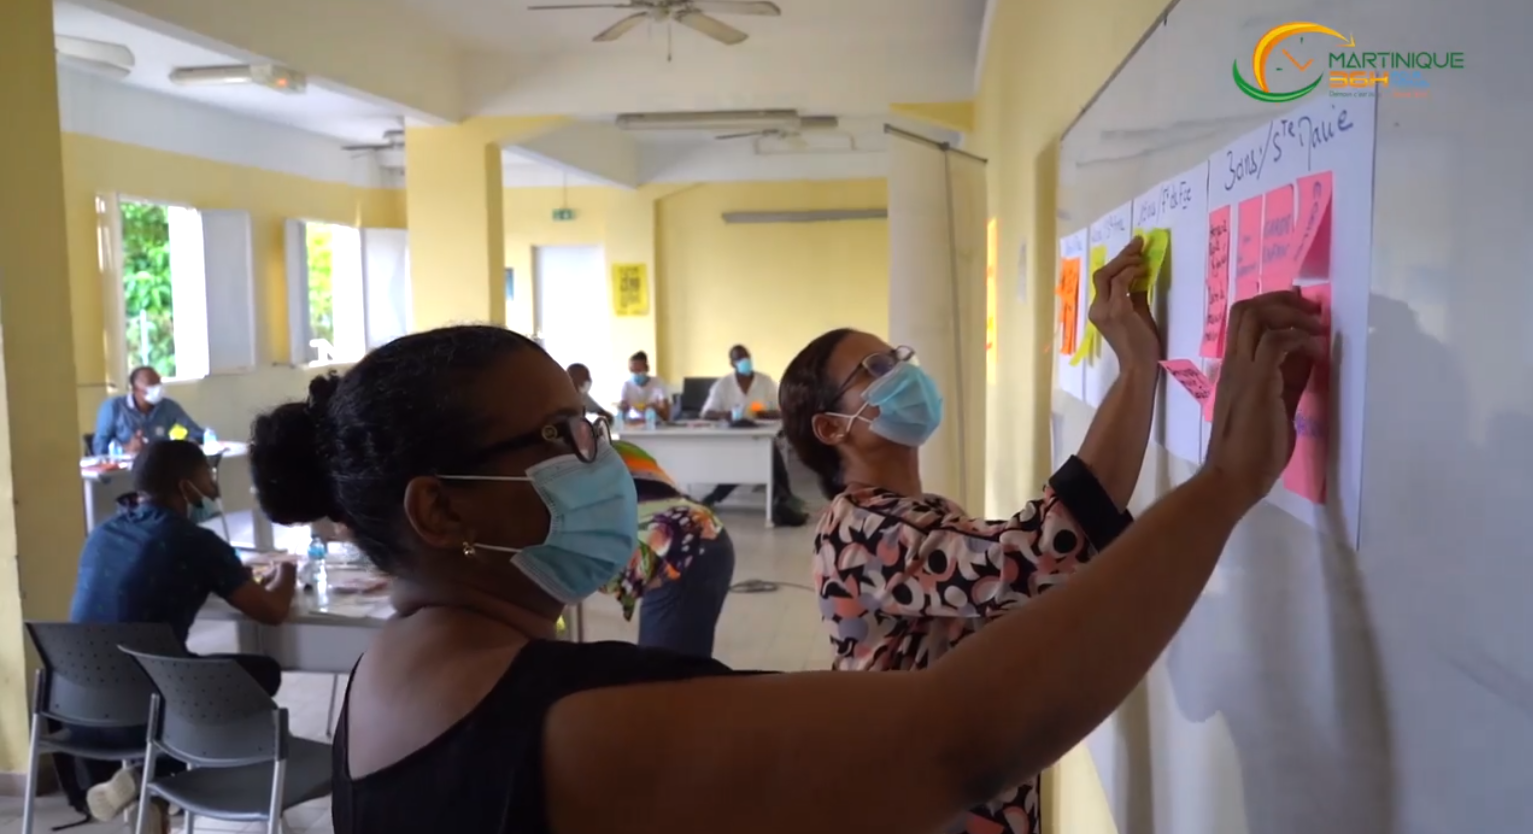     Imaginer la Martinique de 2036 : les premiers ateliers préparatoires ont eu lieu

